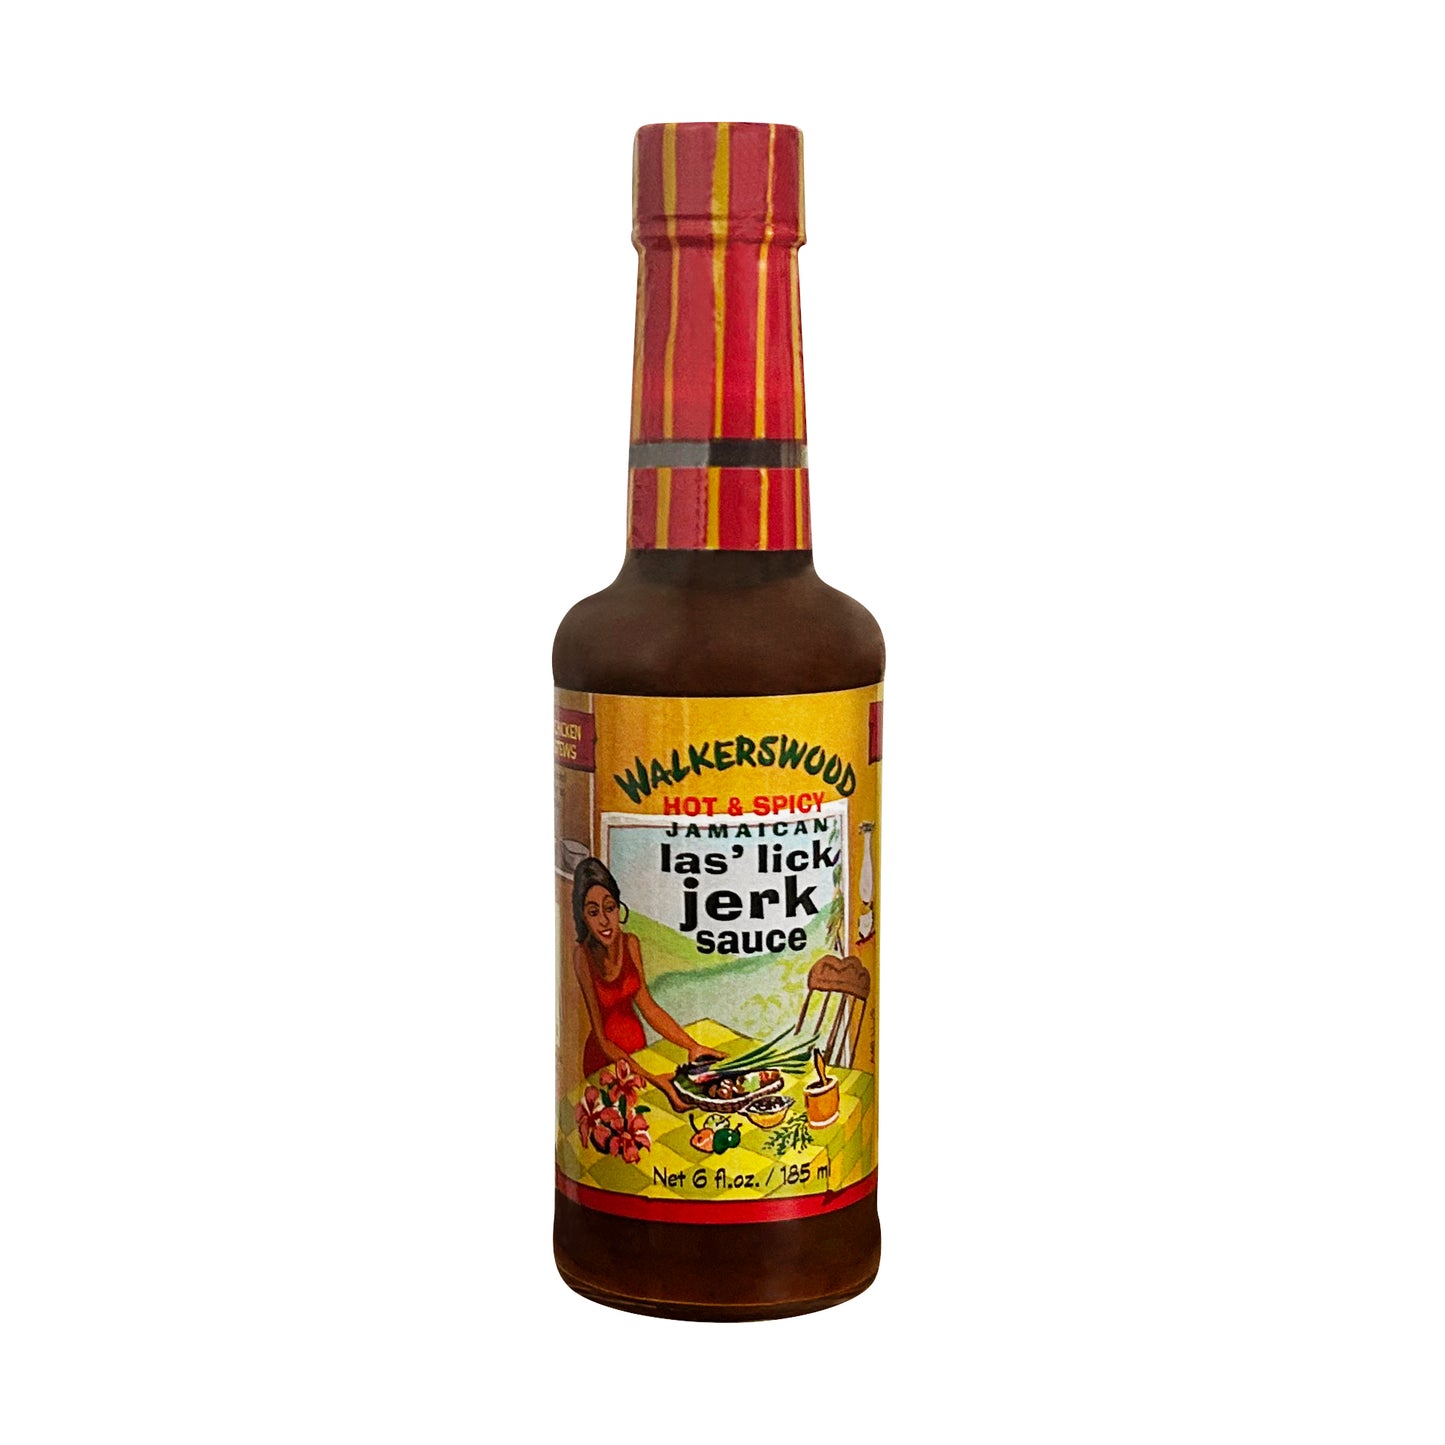 Walkerswood Las Lick Sauce